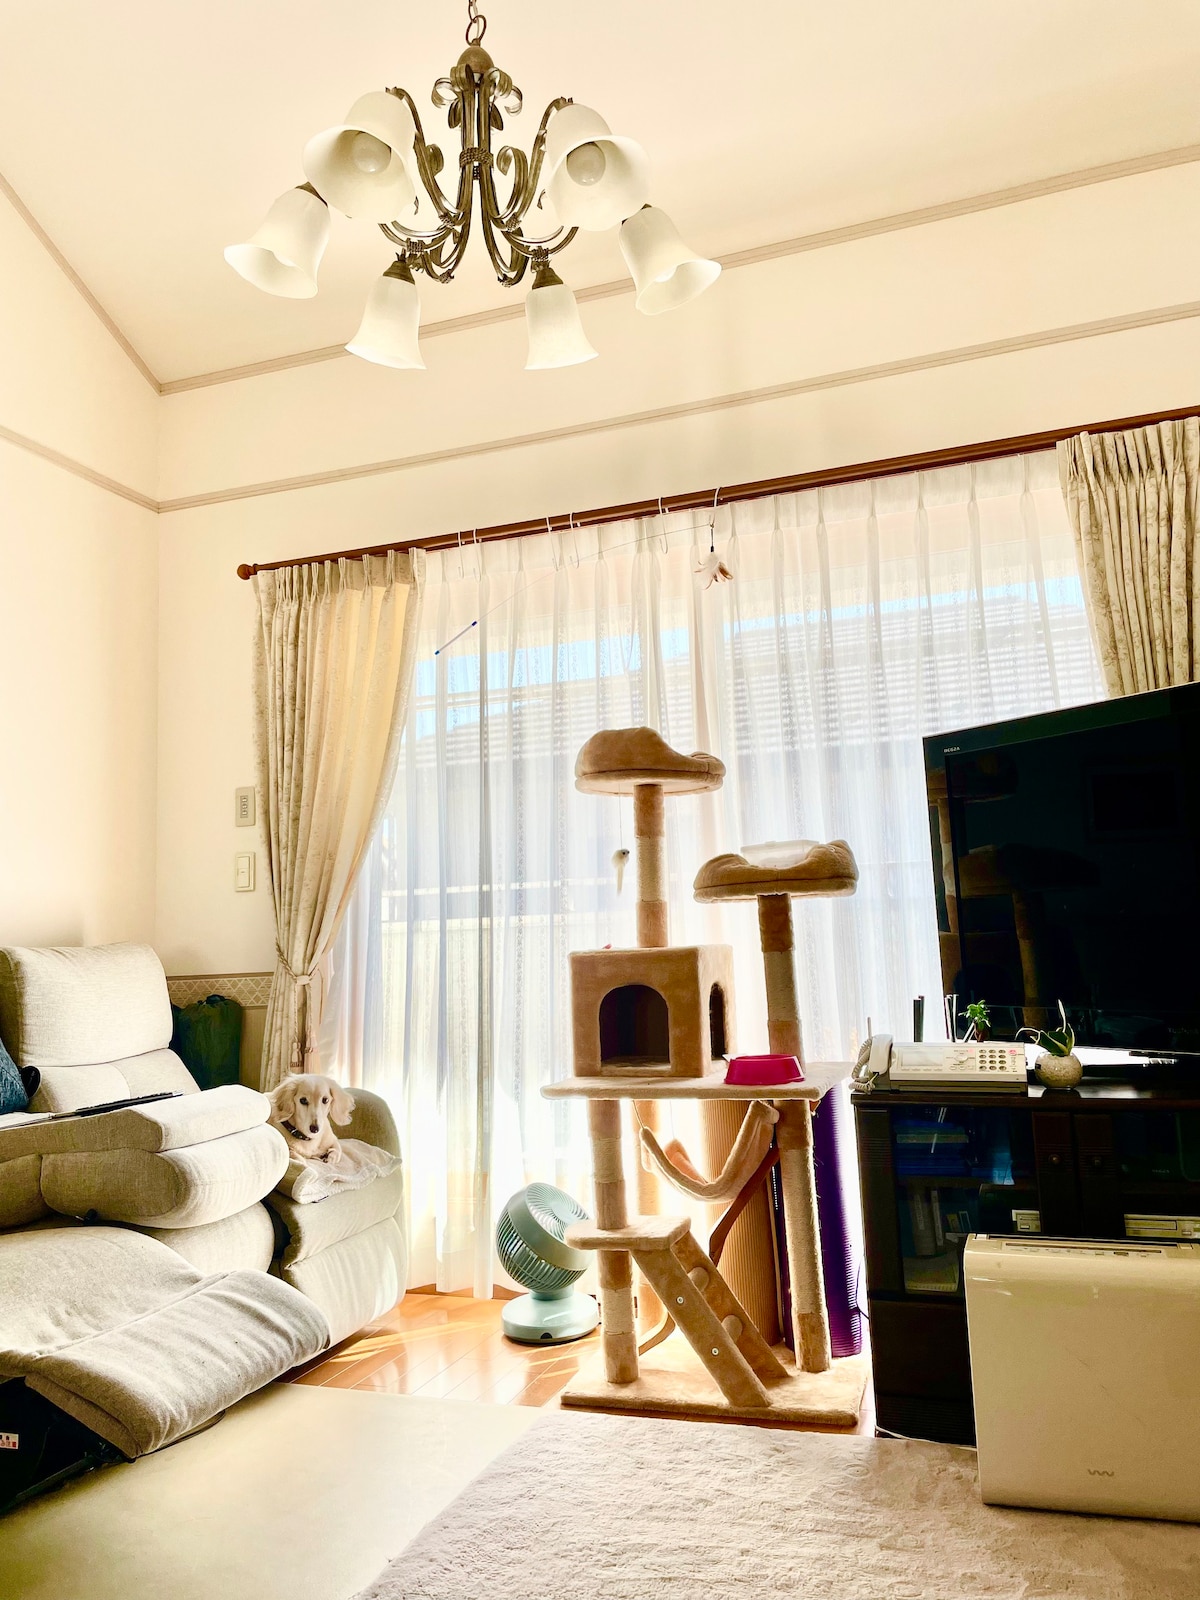 （房间1 ）东京南部一个安静的住宅区内有一间可爱的房间，里面有一只安静的狗和猫